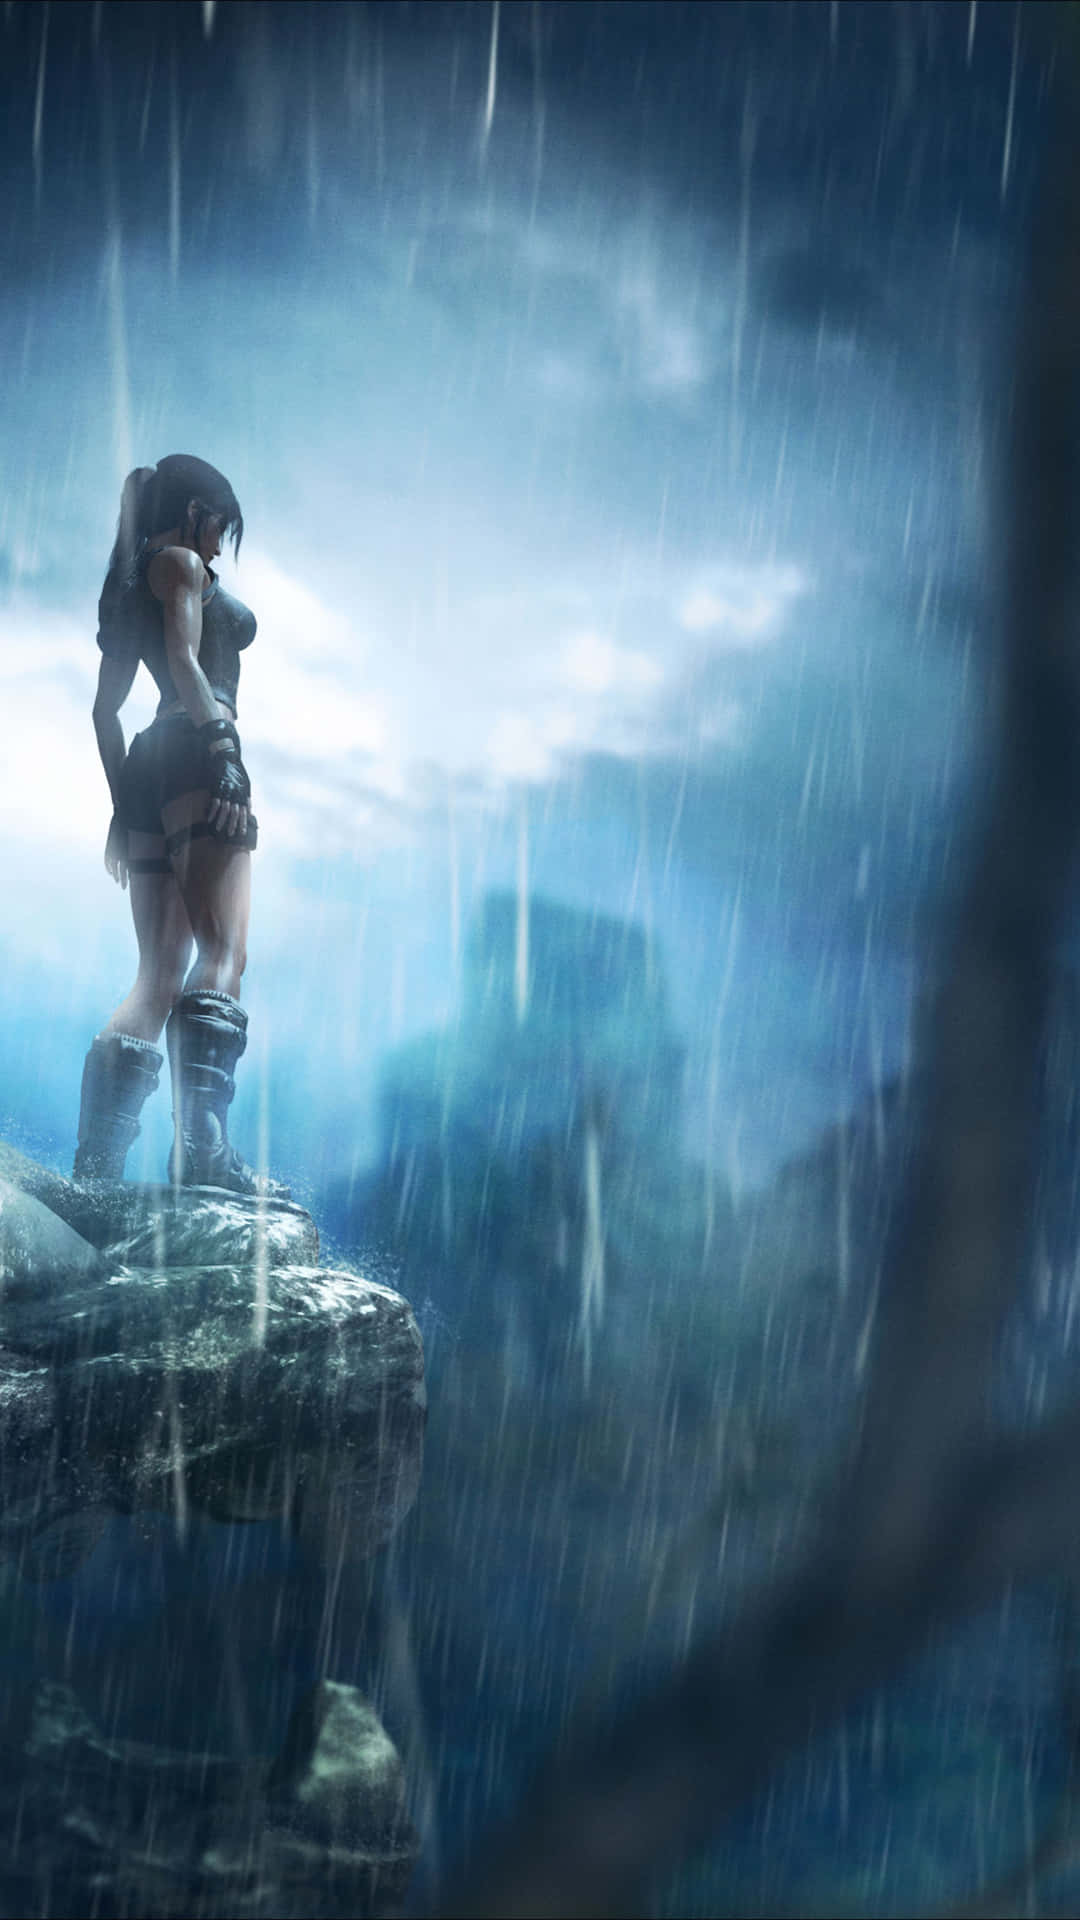 Spielensie Als Lara Croft Im Ikonischen Spiel Tomb Raider Auf Dem Iphone 5s. Wallpaper